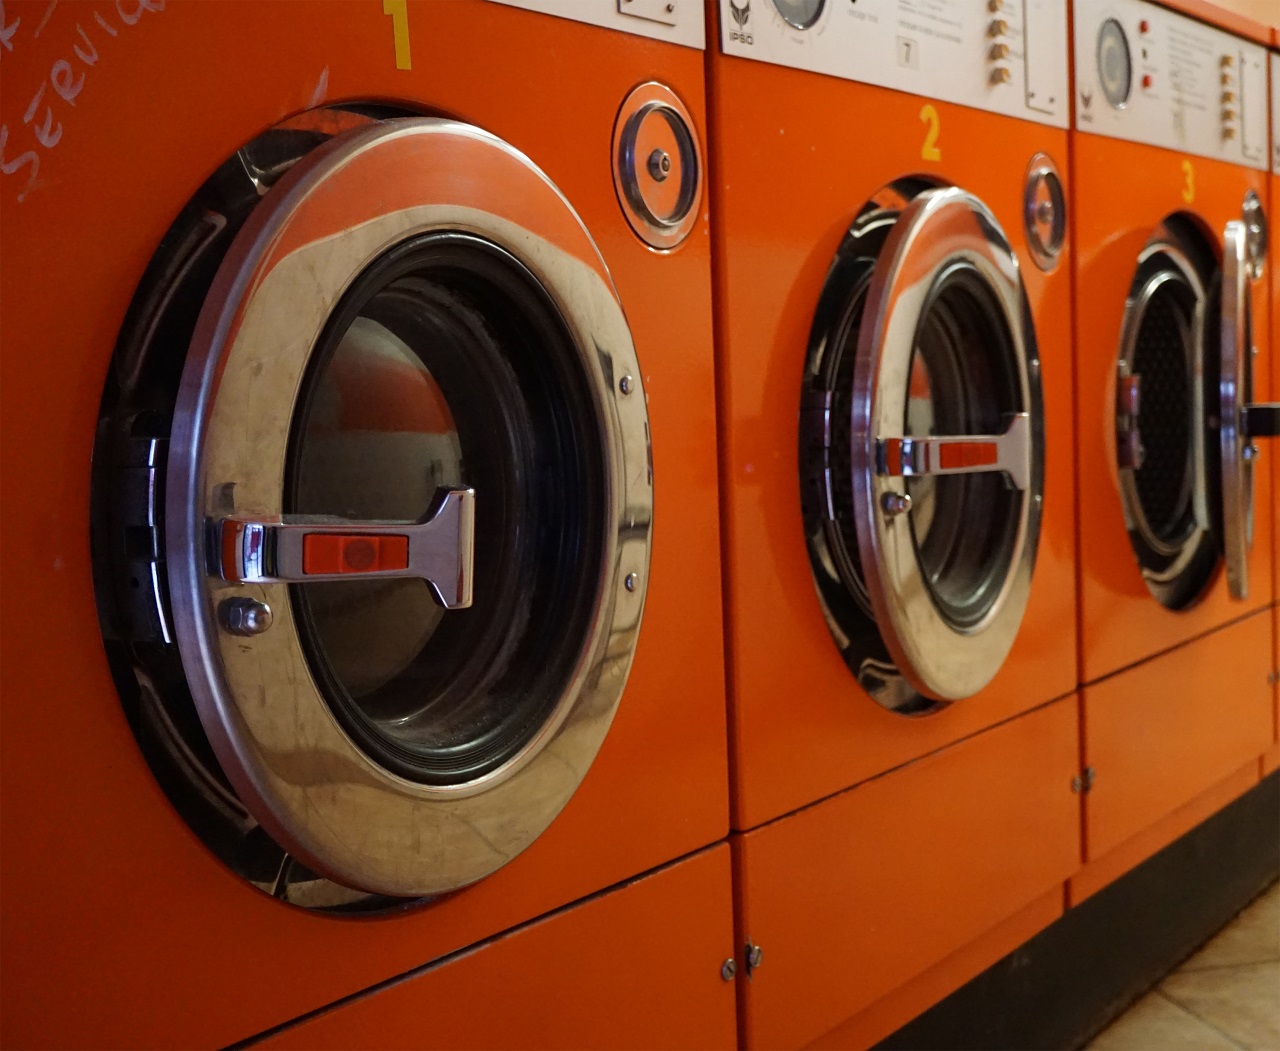 Zasady korzystania z pralni obsługowej